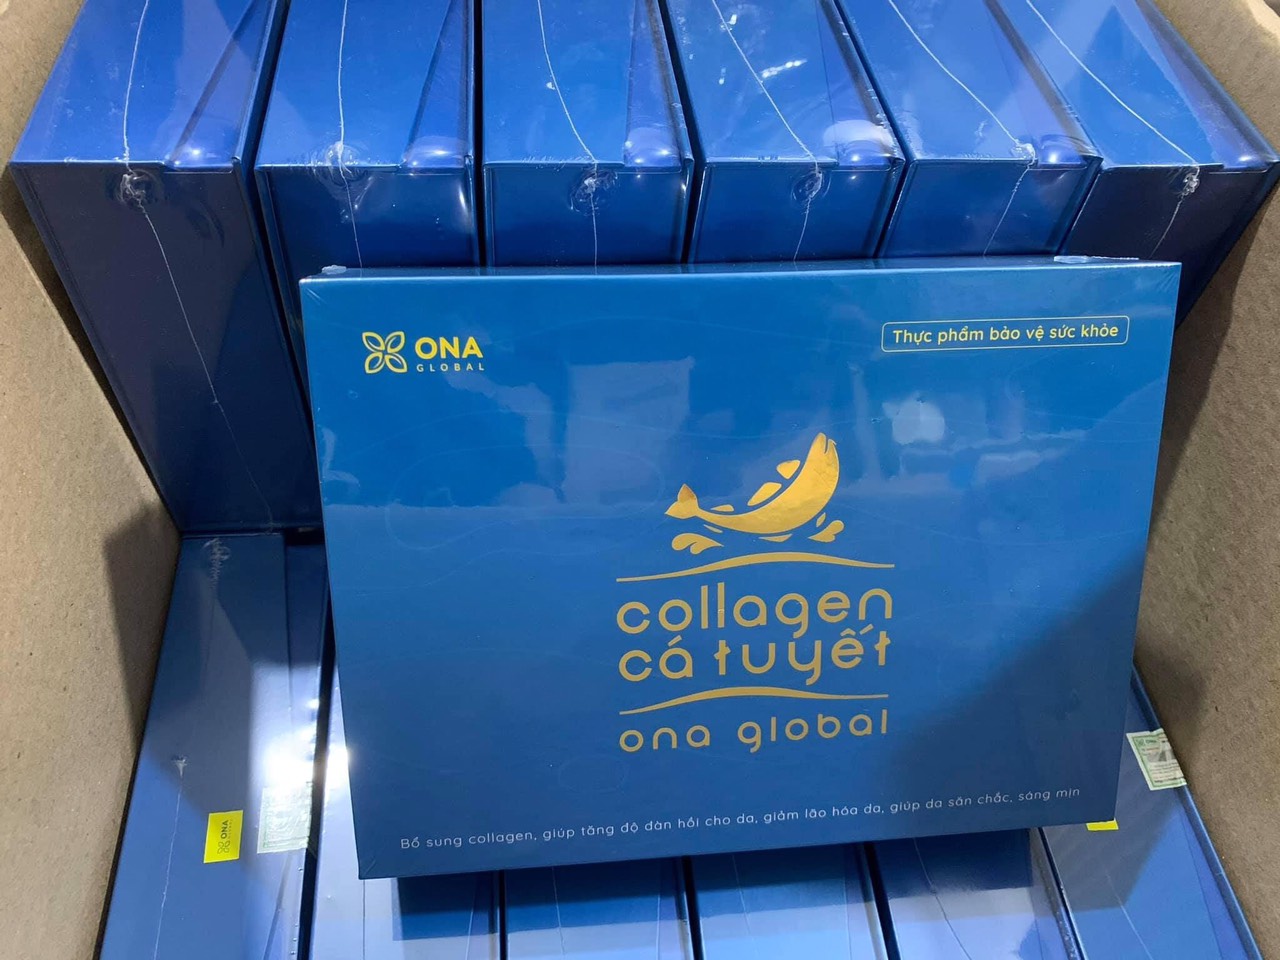 Combo 2 Collagen cá tuyết Ona Gobal làm đẹp da, da săn chắc, căng bóng ngậm nước ẩm mượt, ngăn ngừa lão hóa da - - Nhập khẩu 100% collagen cá tuyết từ Nauy của tập đoàn Seagarden